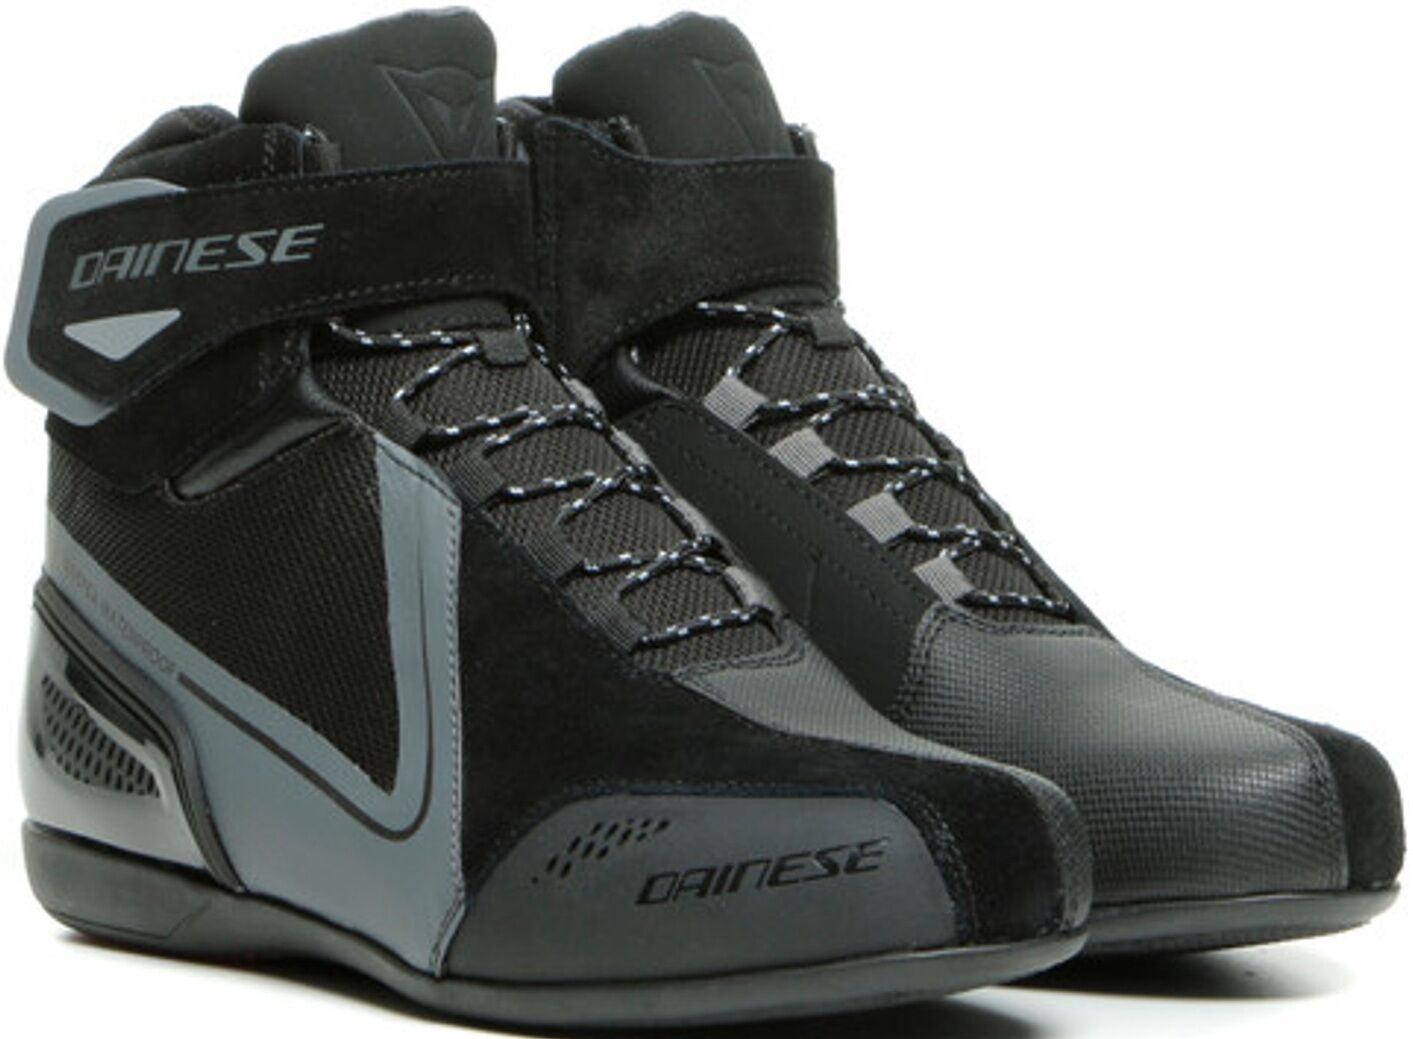 Dainese Energyca D-WP sapatos de motocicleta senhoras impermeáveis